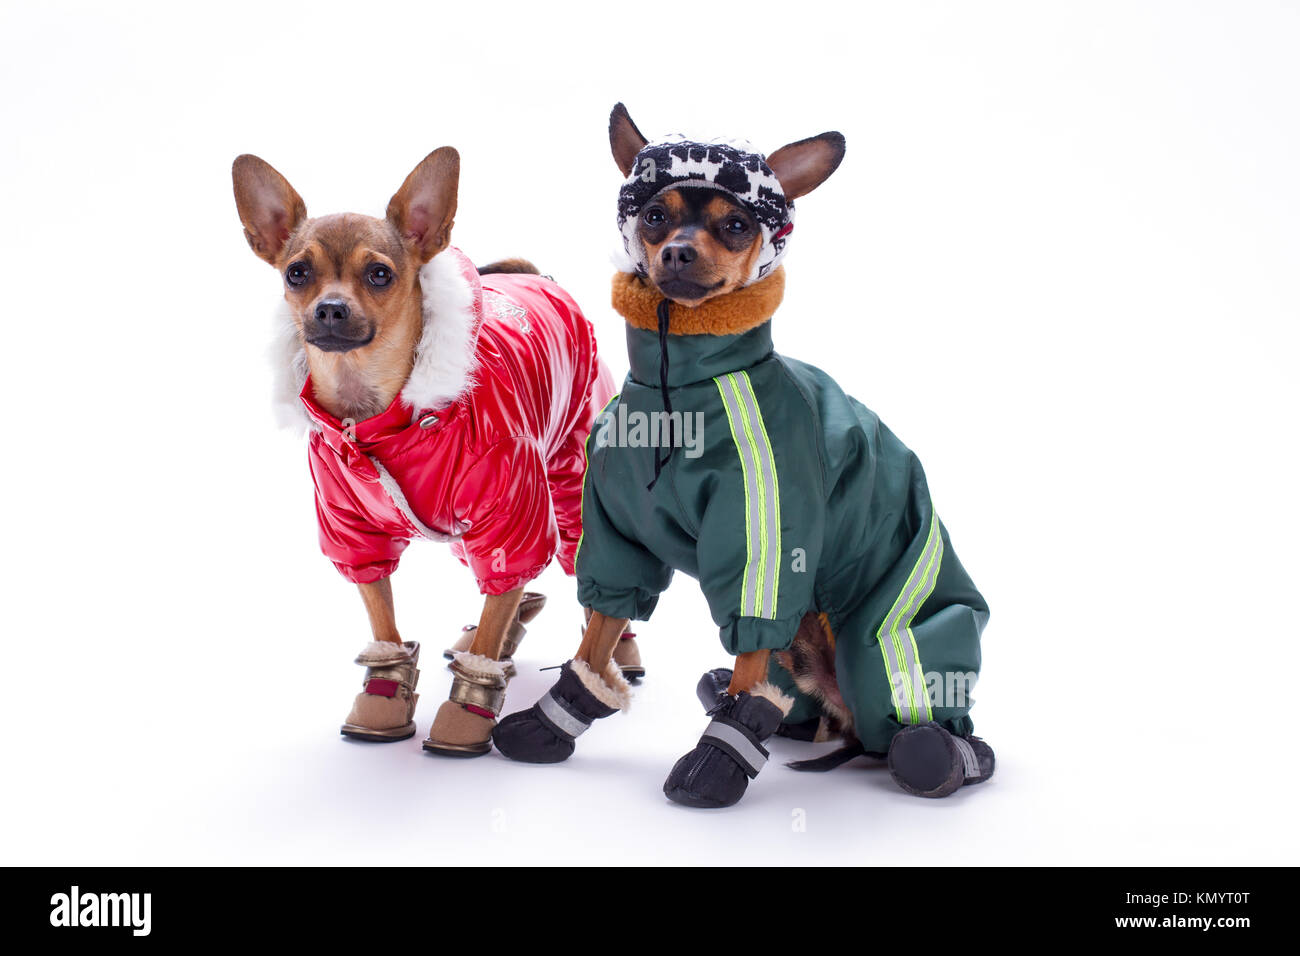 Chihuahua miniatura terrier y perros en la Fotografía de stock Alamy